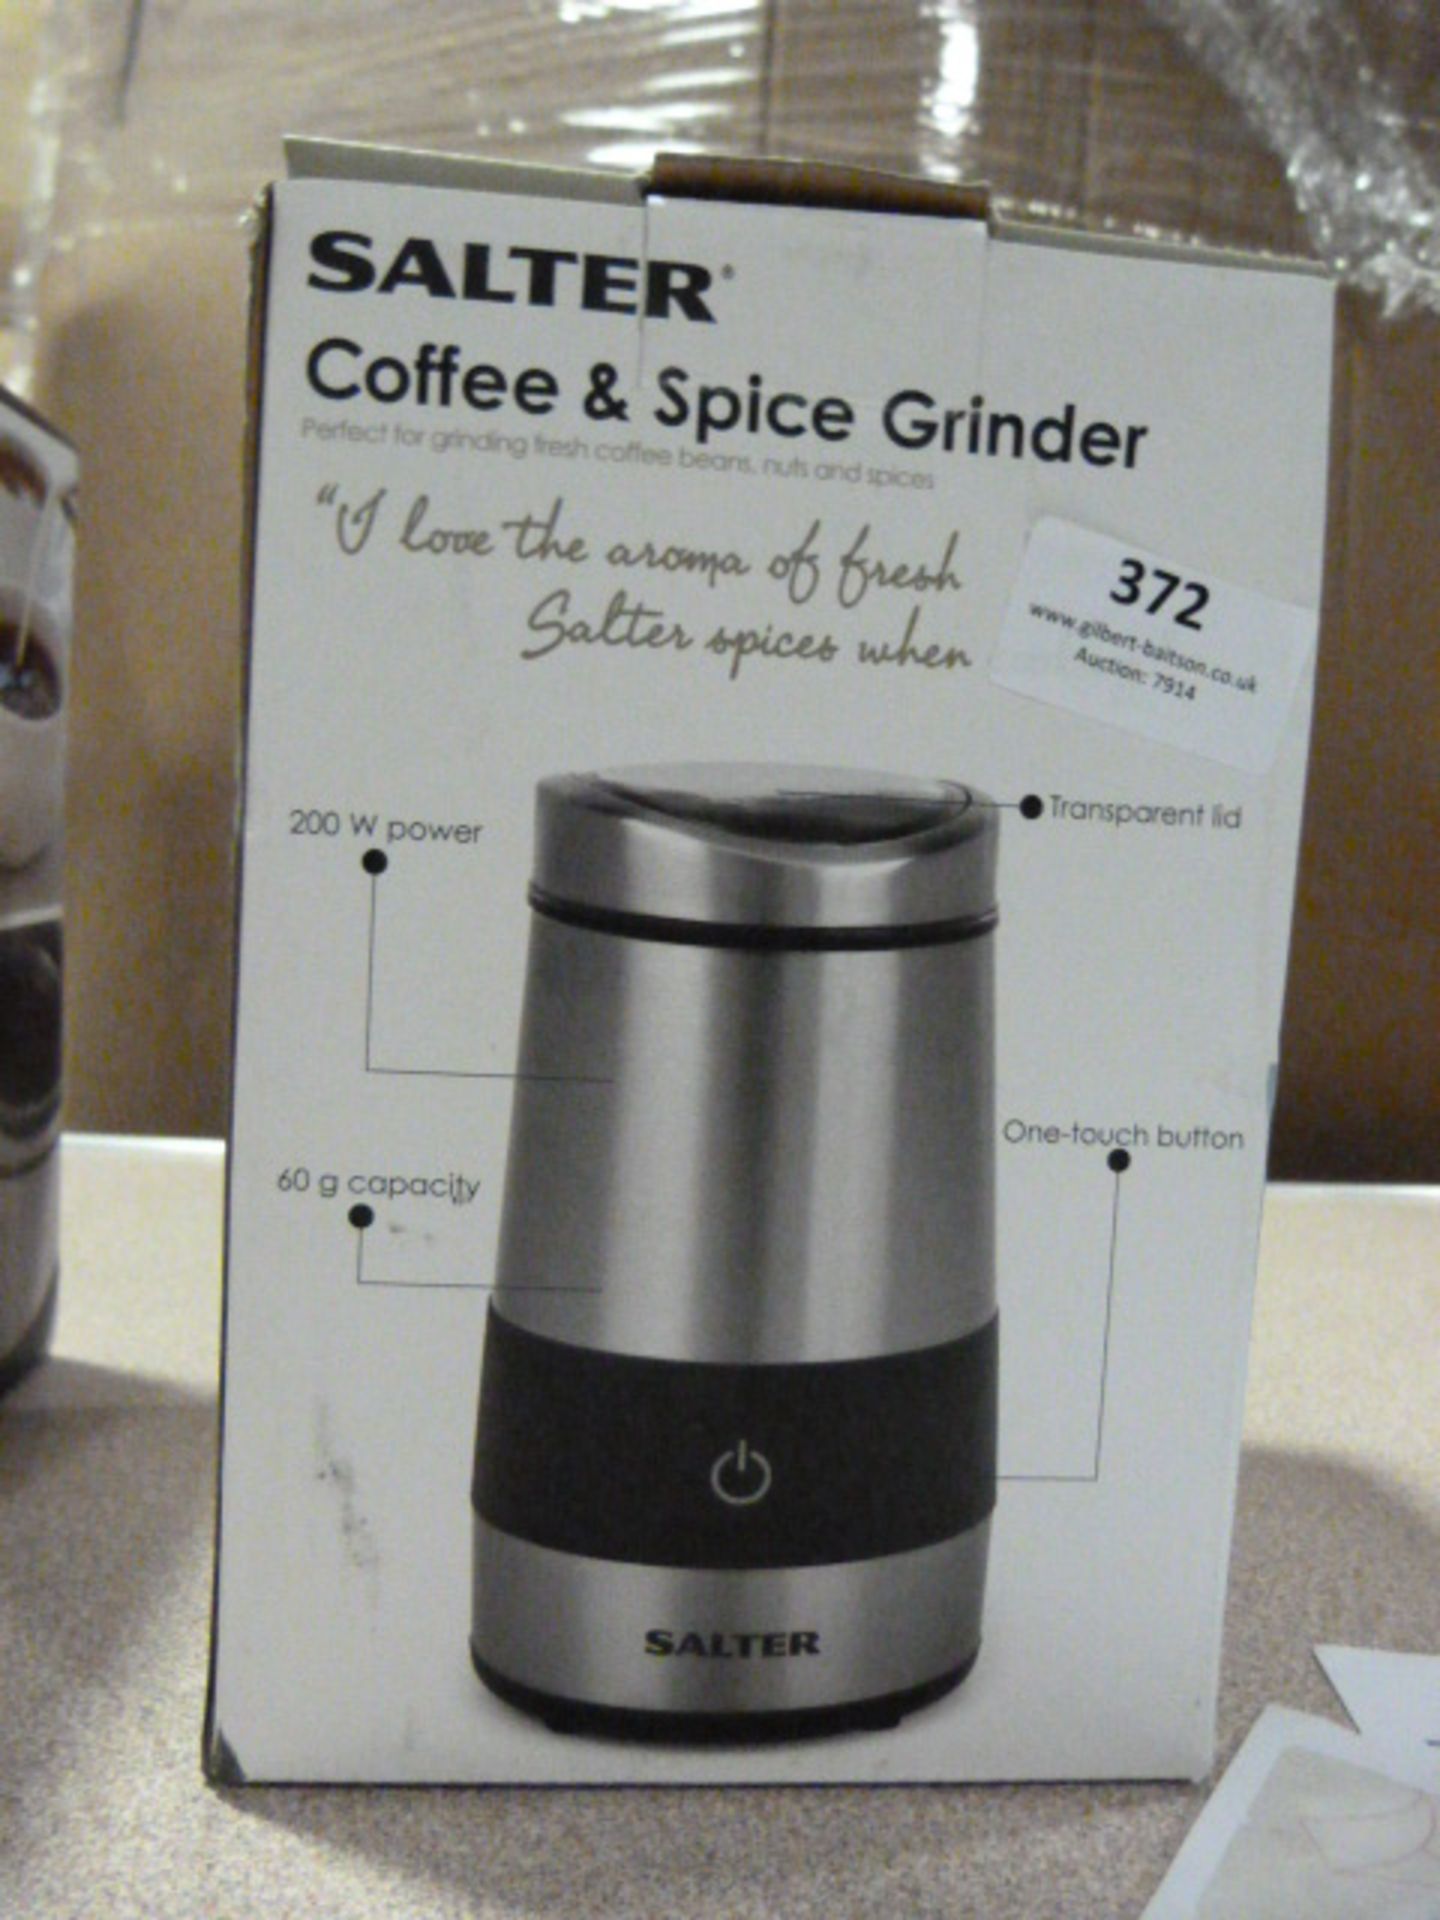 *Salter Coffee & Spice Grinder